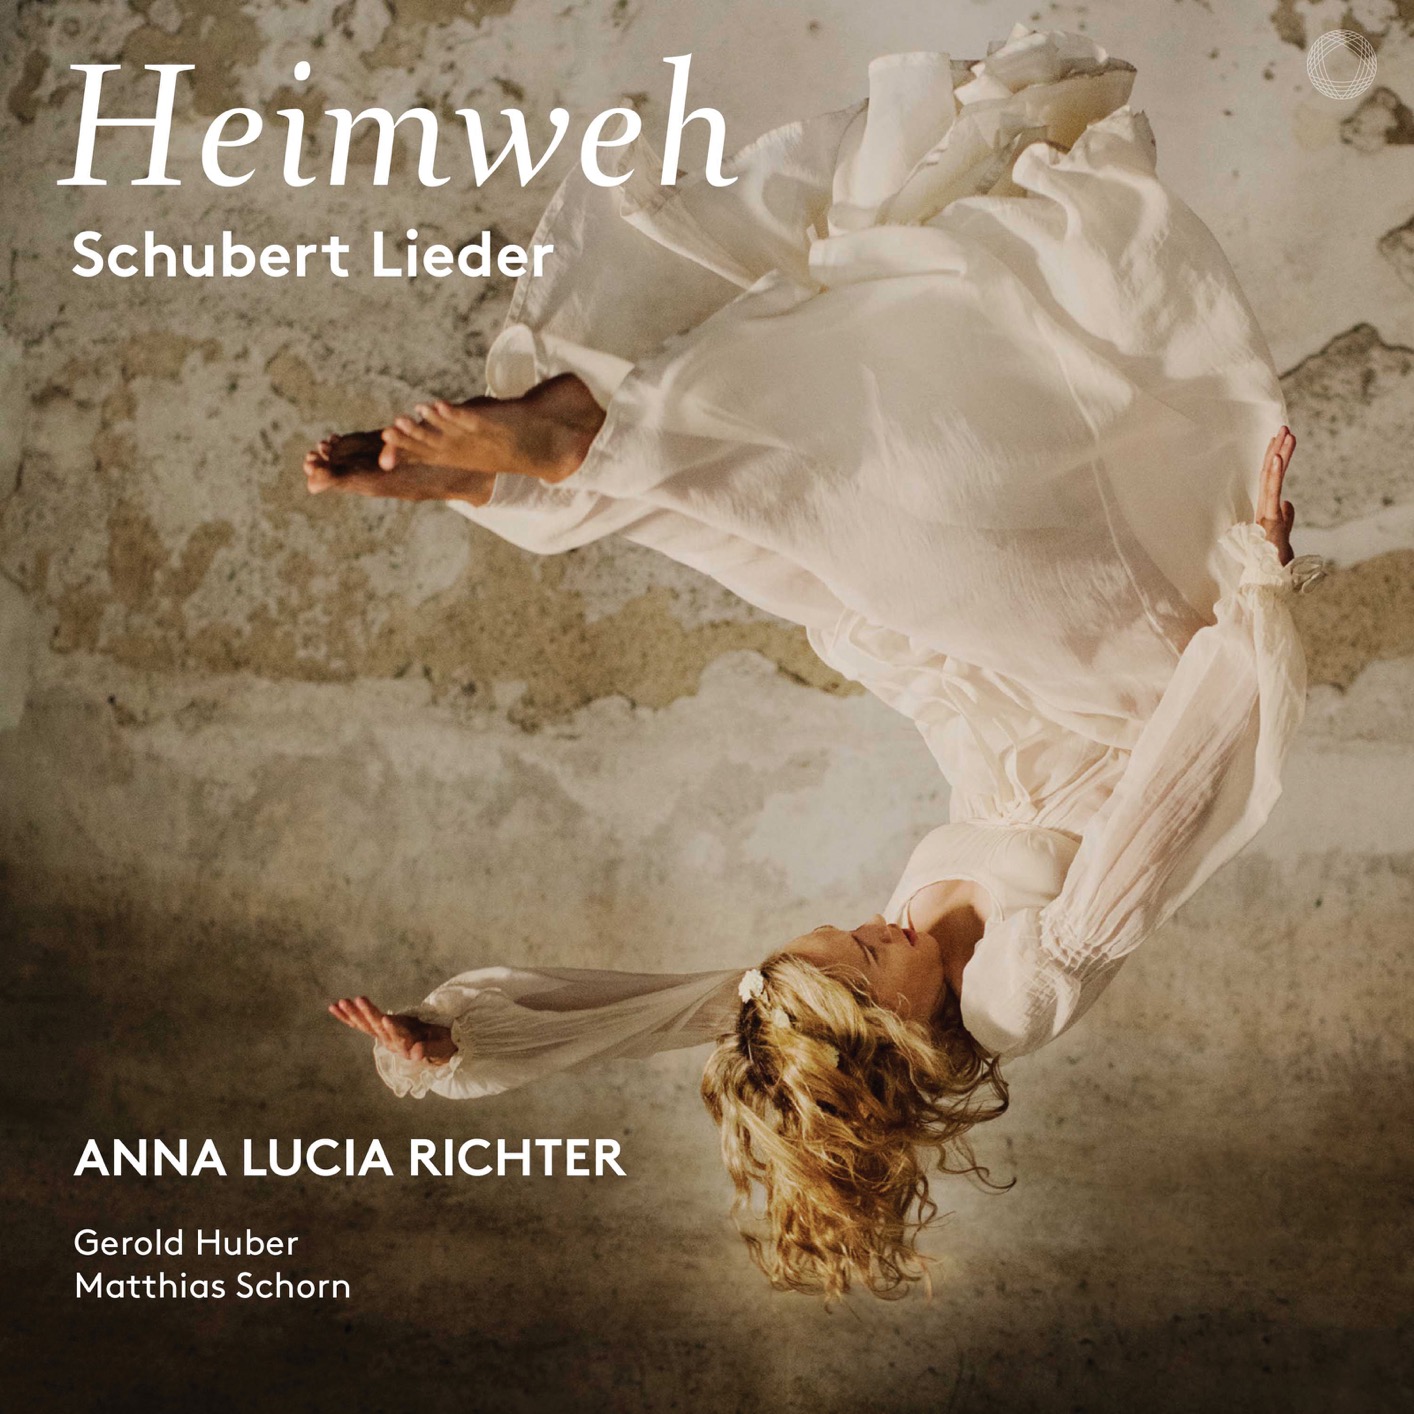 Anna Lucia Richter - Heimweh: Schubert Lieder (2019) [FLAC 24bit/96kHz]